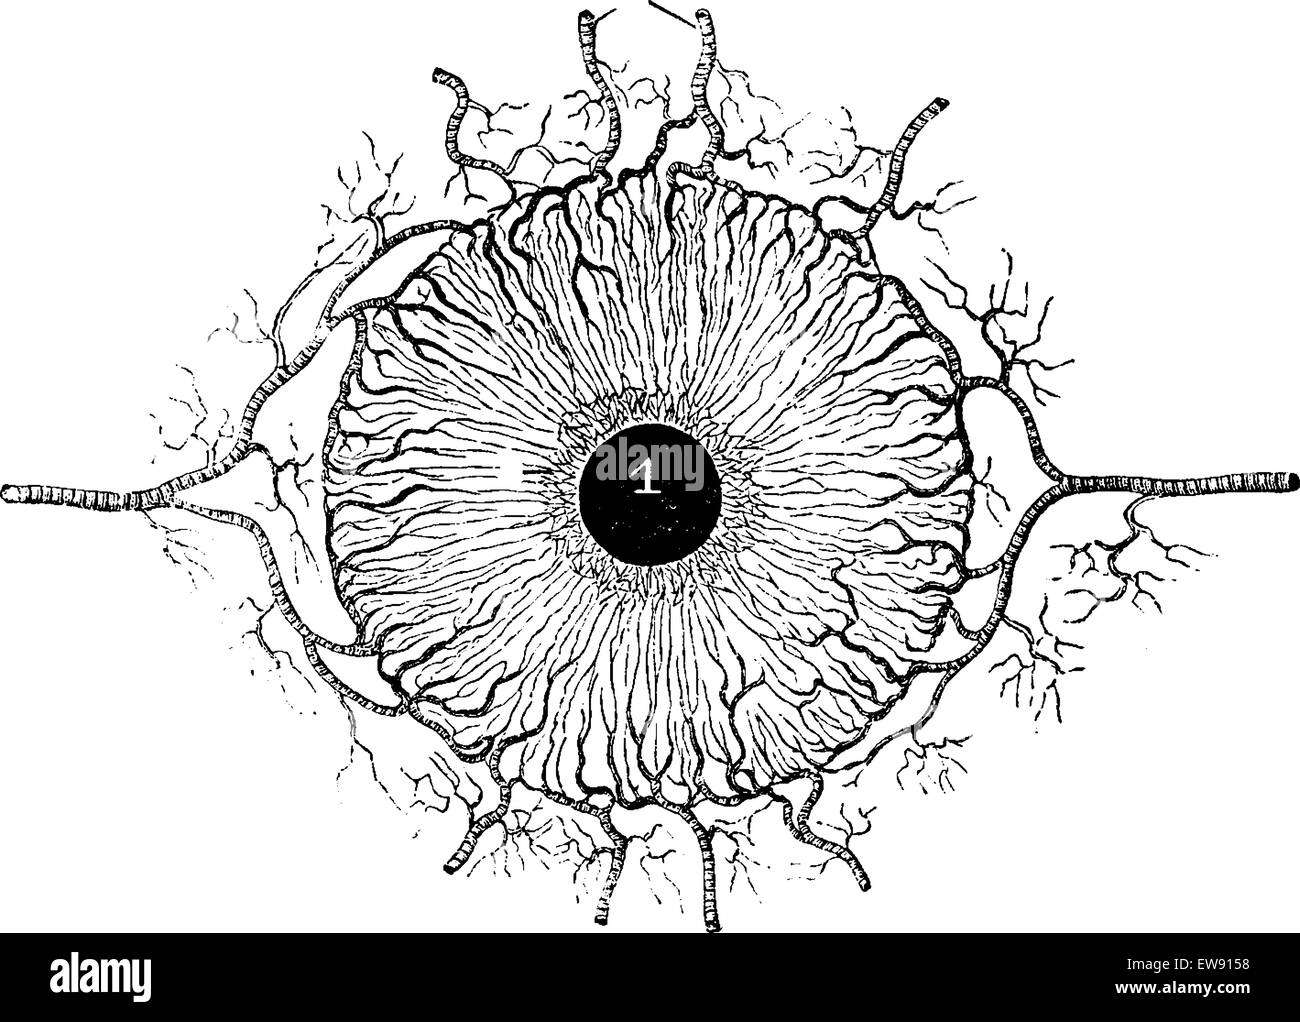 Les droits de l'Iris, montrant les vaisseaux sanguins, vintage engraved illustration. Dictionnaire de médecine habituelle par le Dr Labarthe - 1885 Illustration de Vecteur